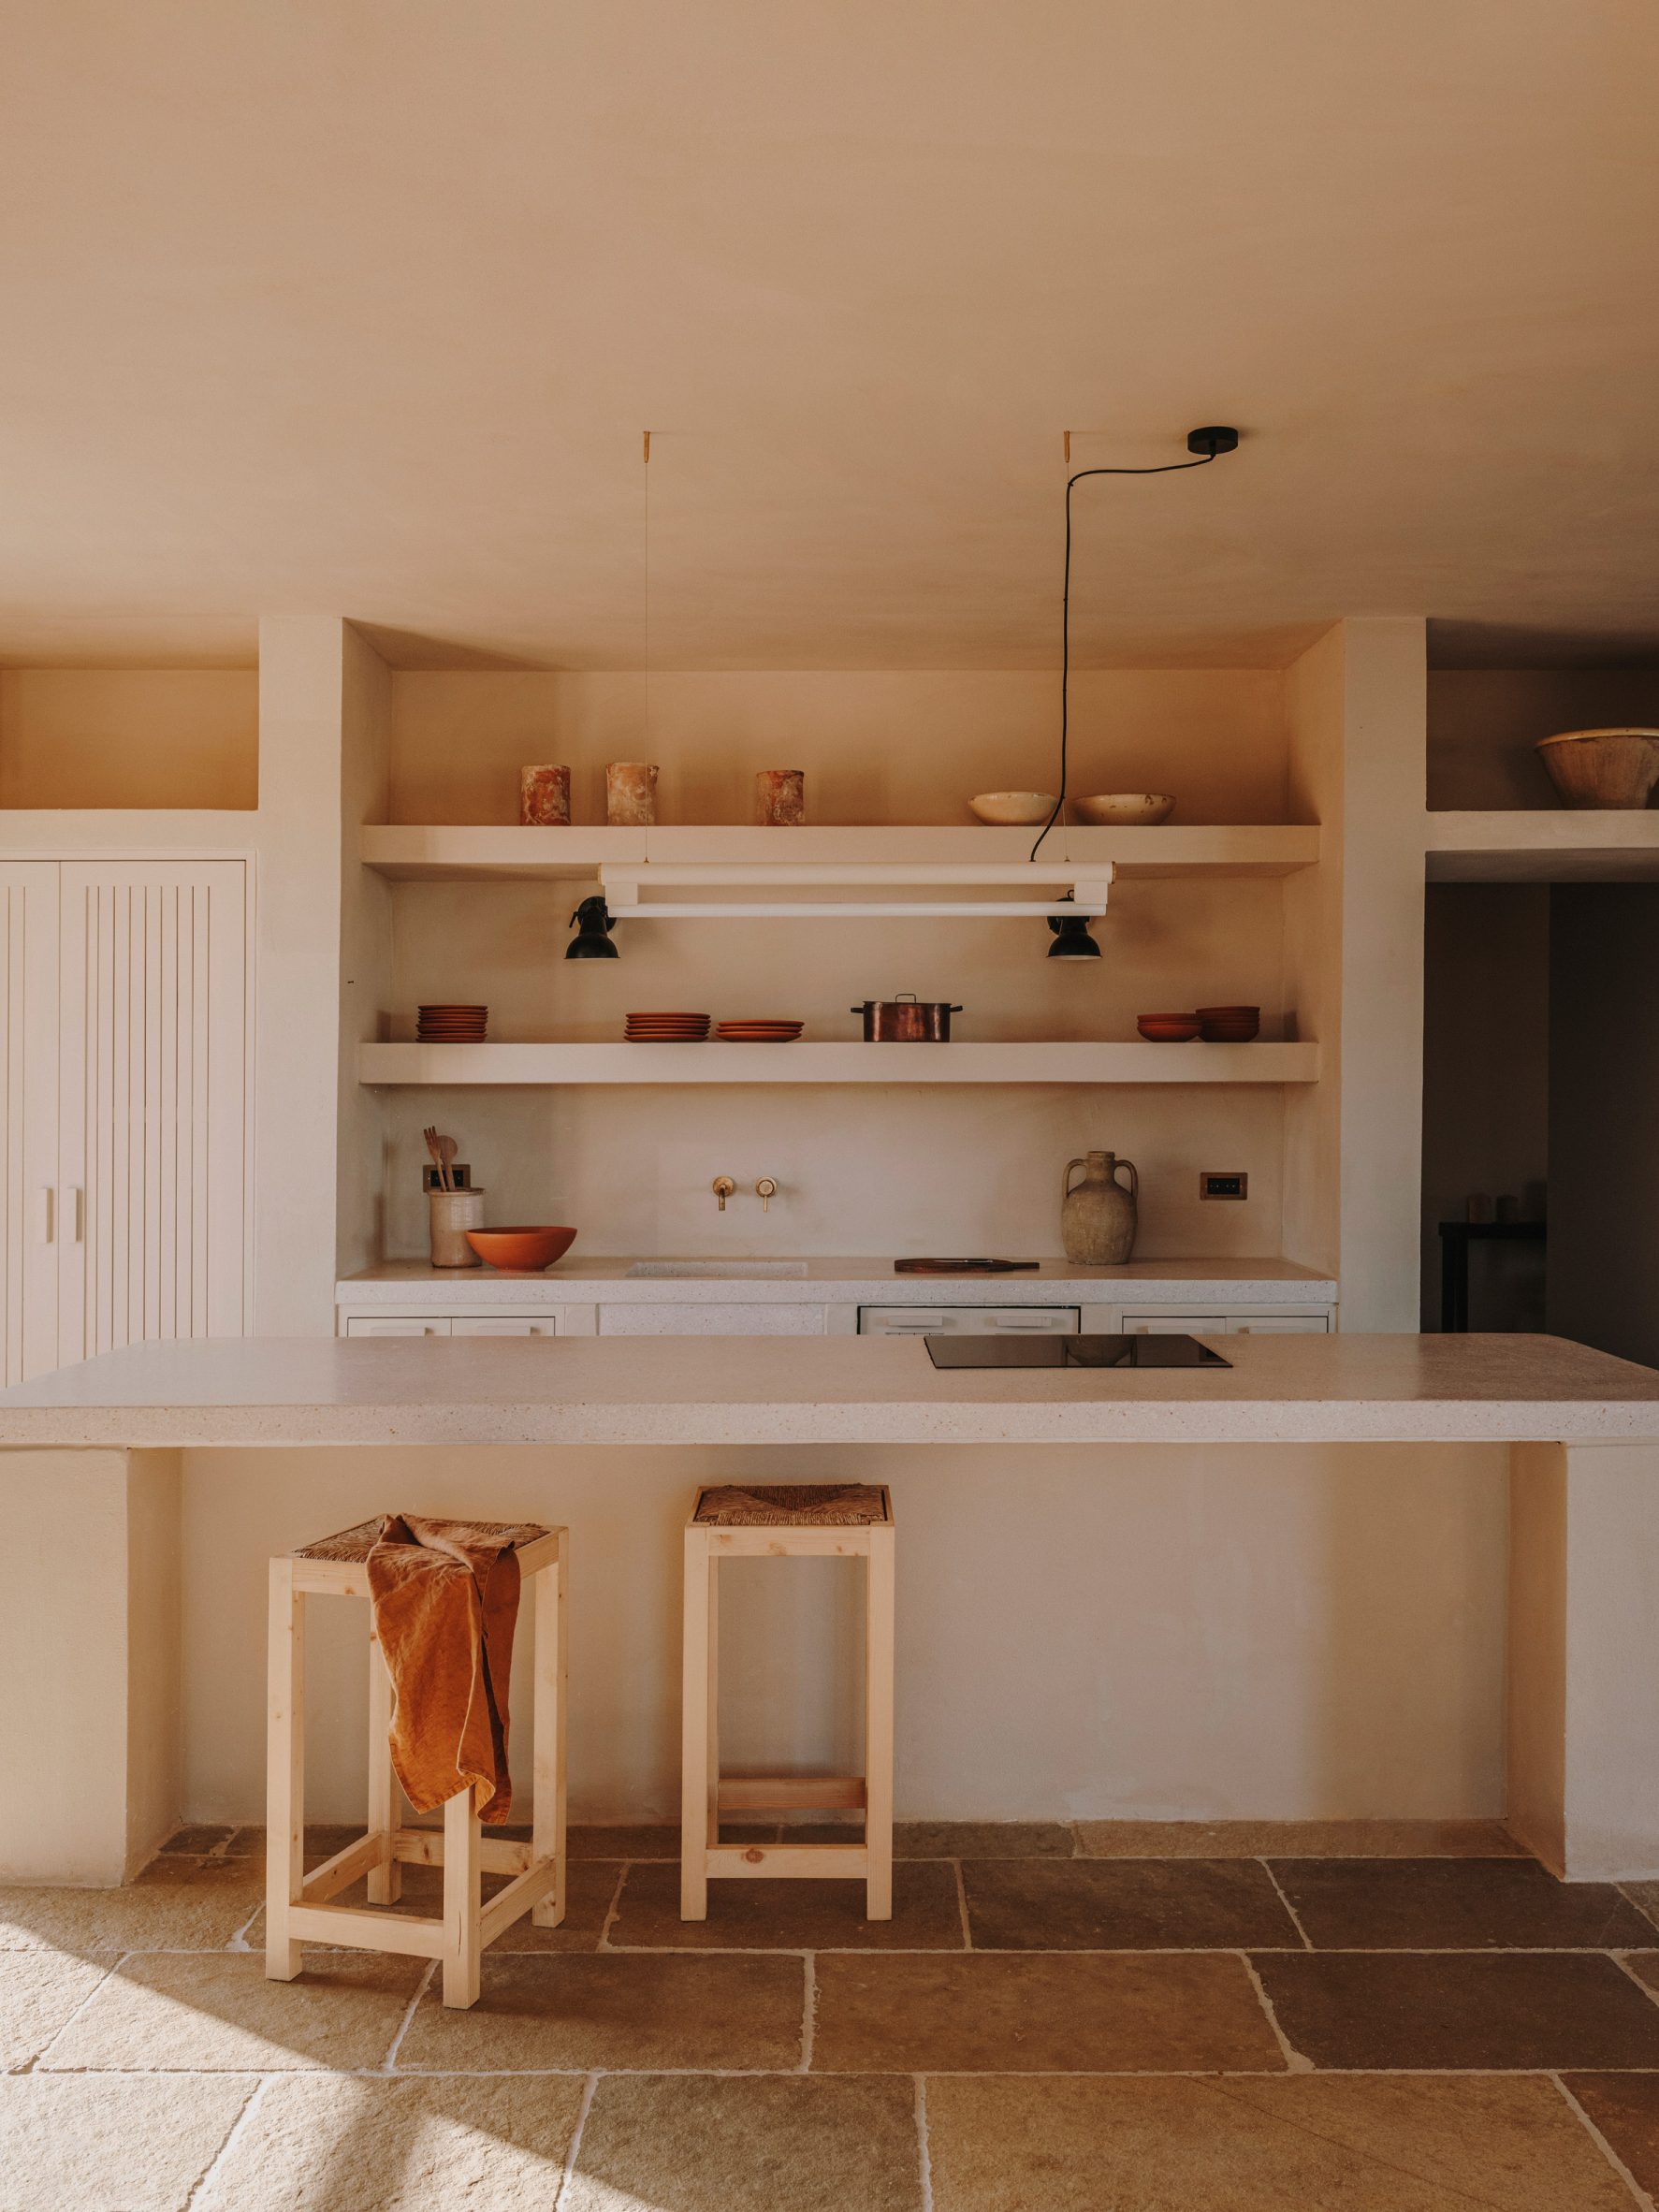 Earth-toned kitchen in villa in Puglia